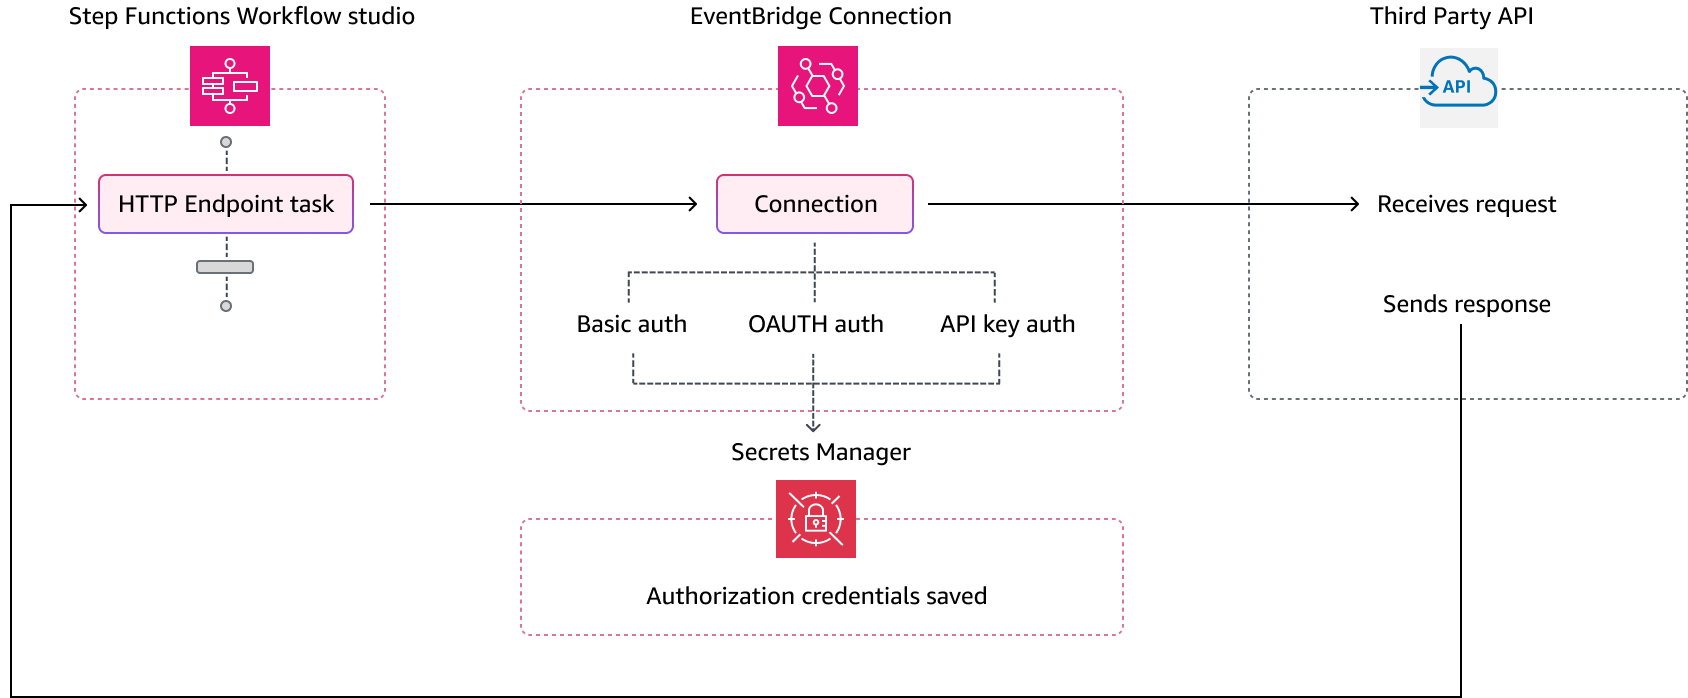 處理程序Step Functions使EventBridge用管理協力廠商 API 提供者驗證憑證的連線。 EventBridge會在中建立密碼，Secrets Manager以加密的形式儲存連線和授權參數。